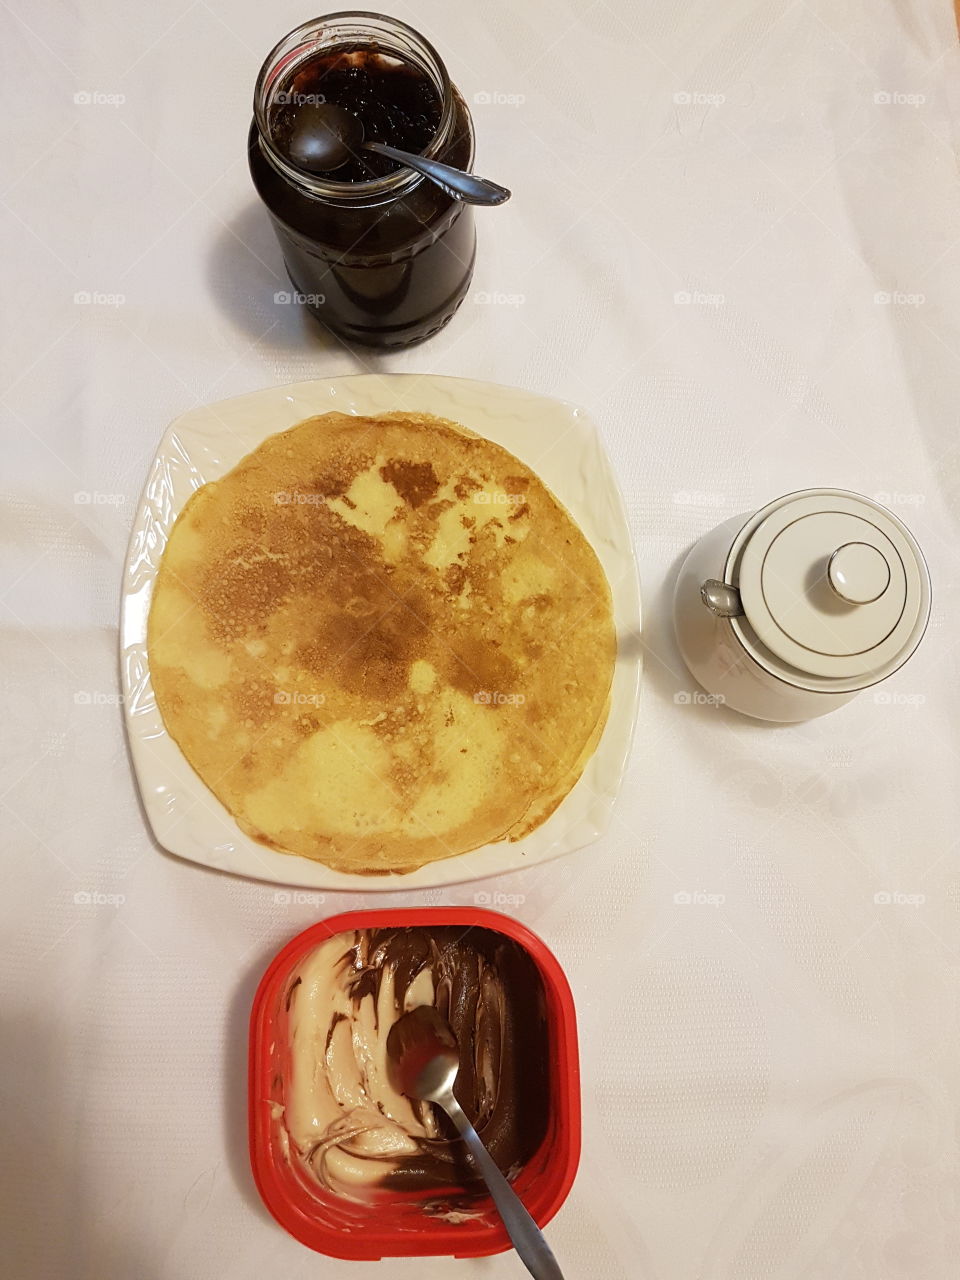 pancakes with jam and eurocream, nutella, cream